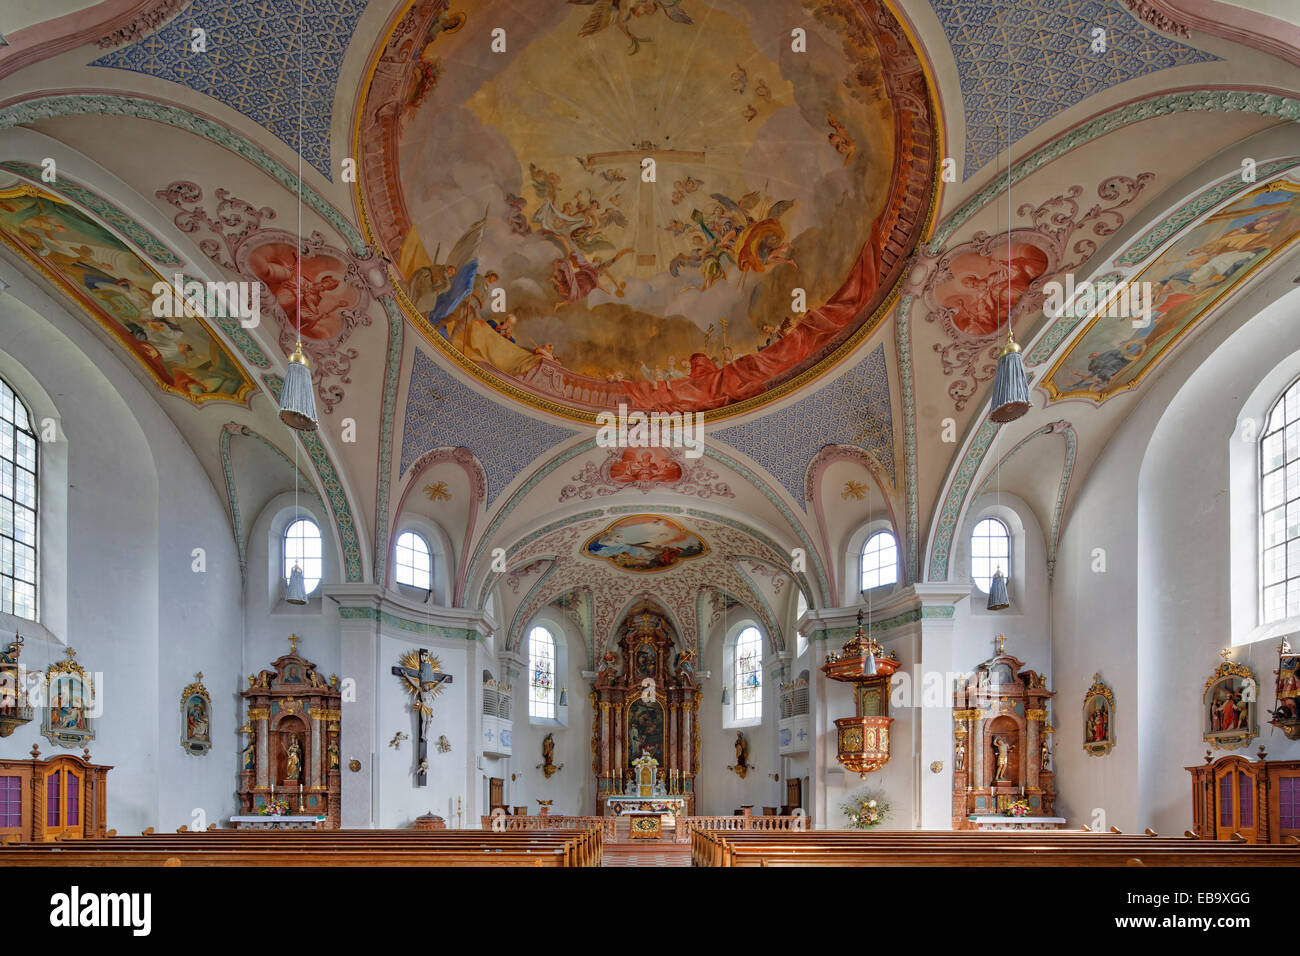 Heilig-Kreuz-Kirche, Église Sainte Croix, Ebbs, Upper Bavaria, Bavaria, Germany Banque D'Images